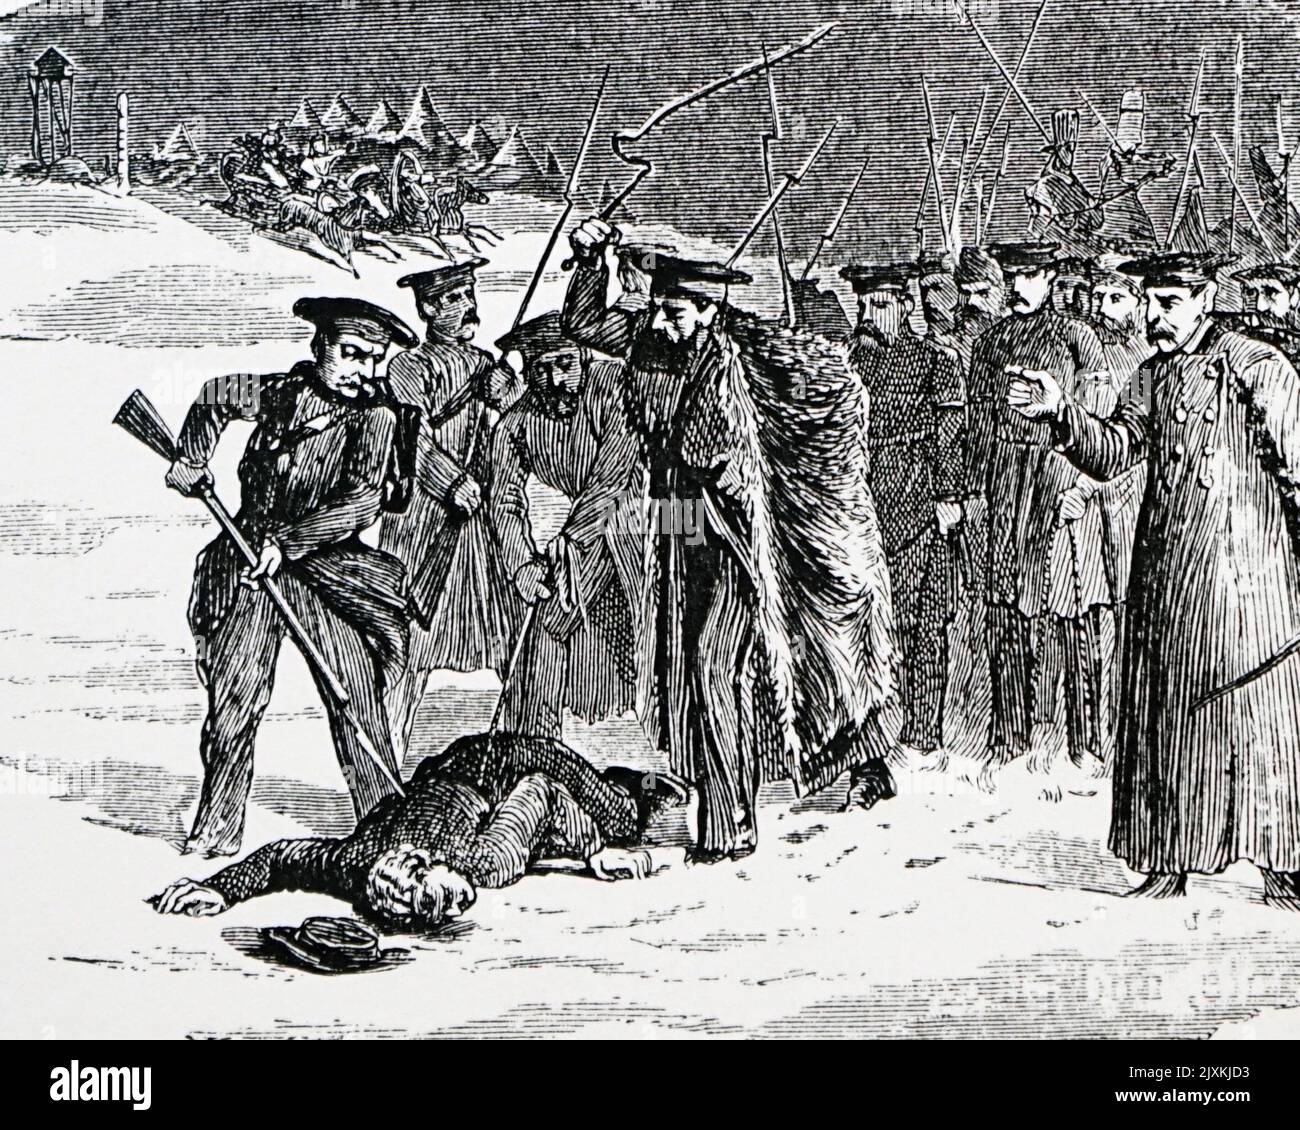 Abbildung mit dem Titel „Exil“, auf der russische Bürger, die zum Exil verurteilt wurden, auf ihre Reise nach Sibirien gebracht werden, um ihre Strafen zu beginnen. Datiert aus dem 19.. Jahrhundert Stockfoto